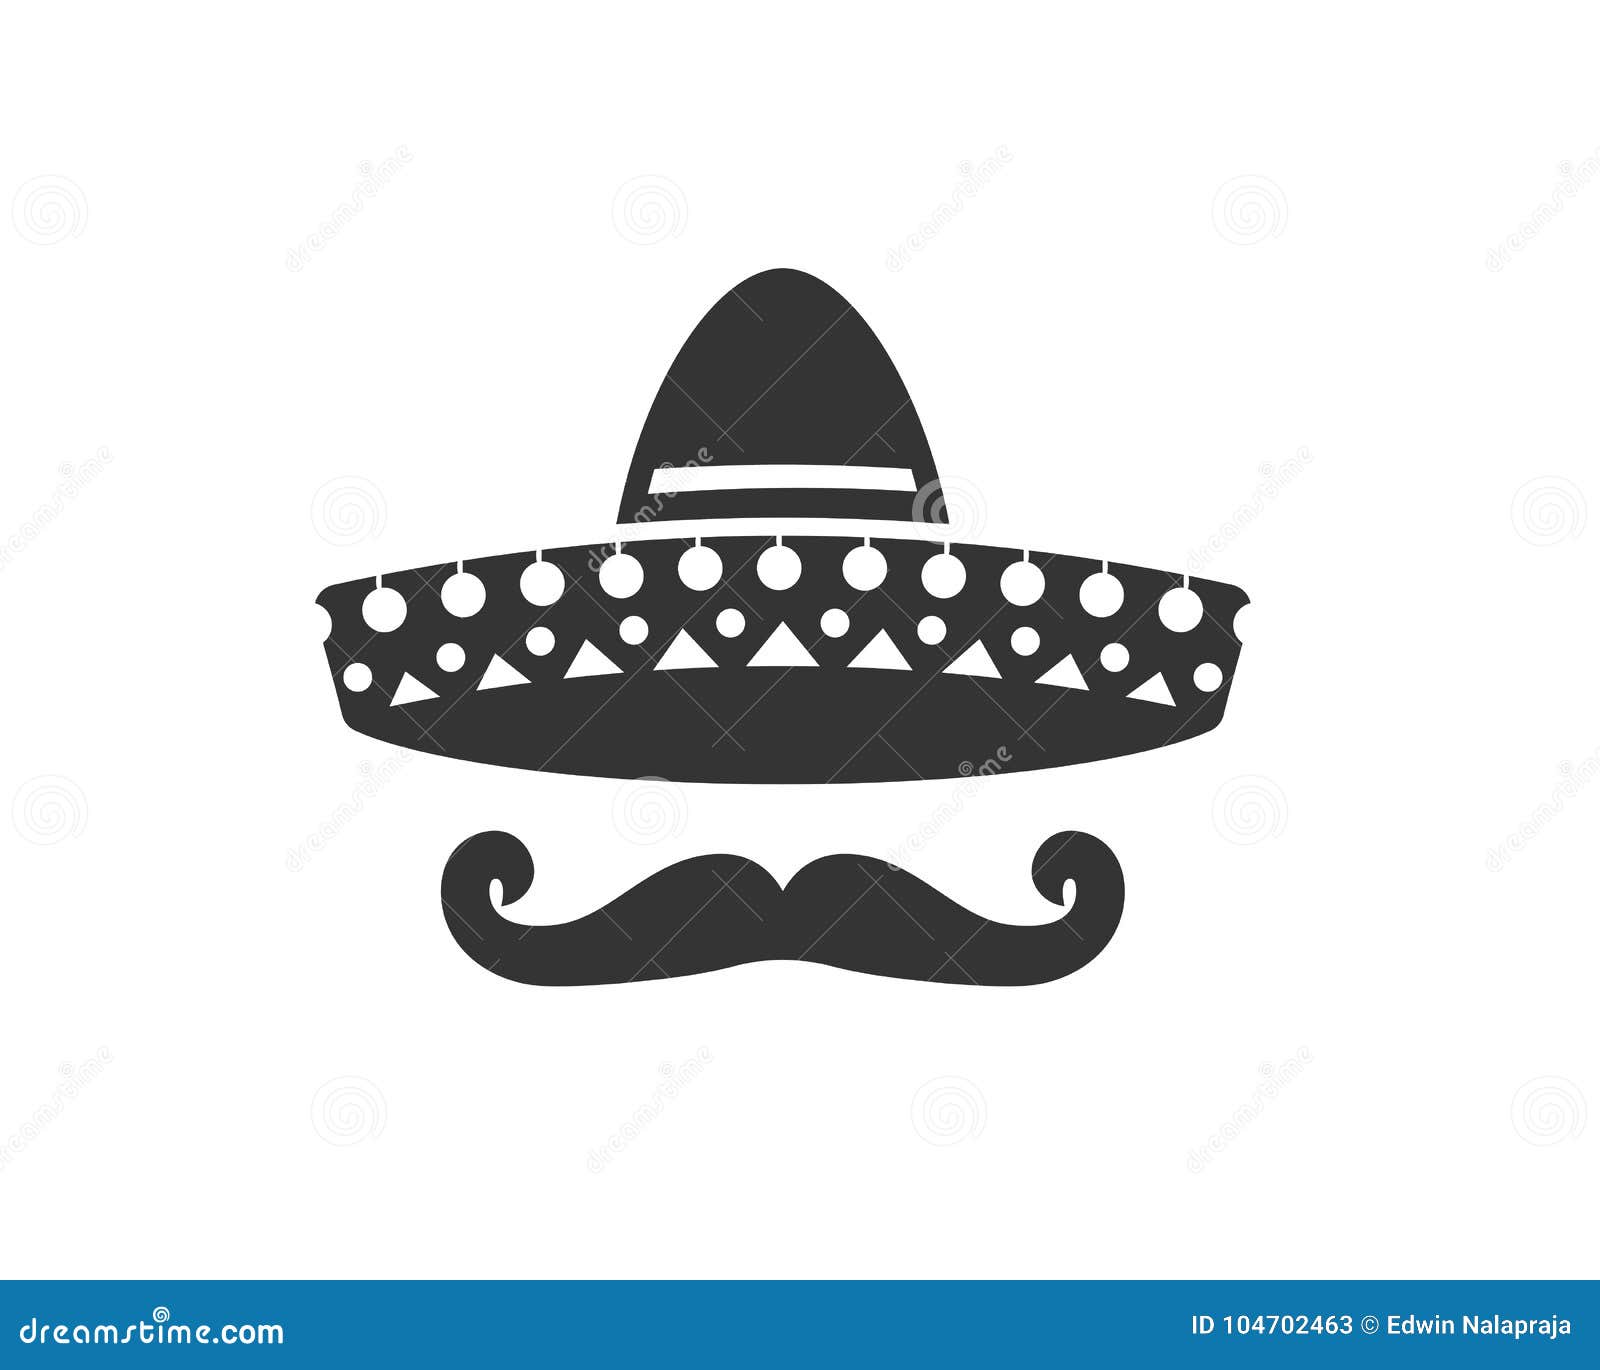 sombrero silhouette, hat and mustache